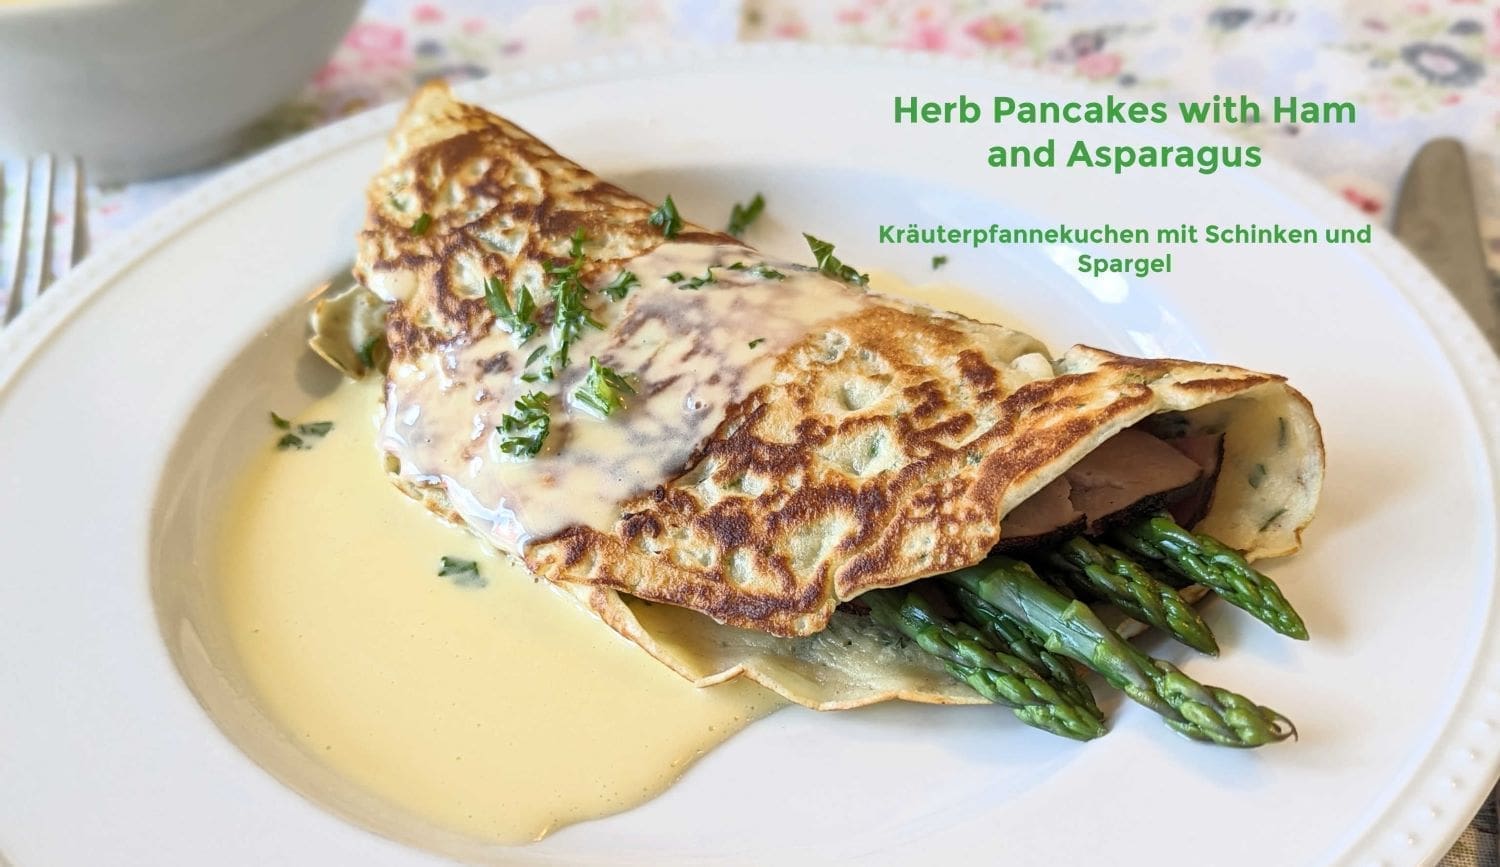 German Herb Pancakes with Asparagus and Ham -Kräuterpfannekuchen mit Spargel und Schinken